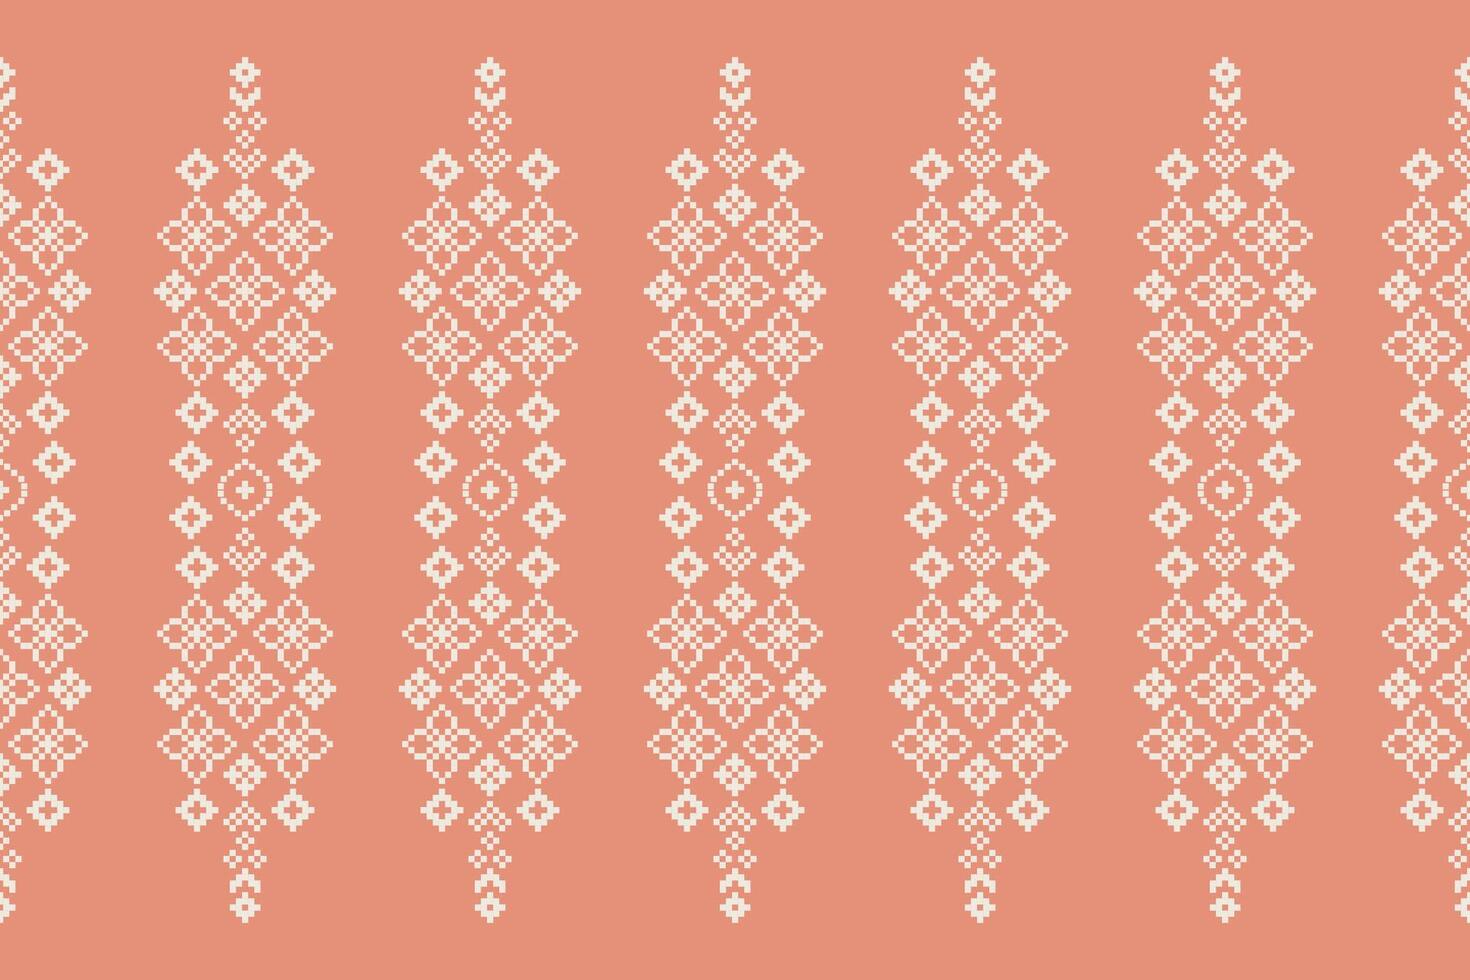 etnisch meetkundig kleding stof patroon kruis steek.ikat borduurwerk etnisch oosters pixel patroon roos roze goud achtergrond. abstract,vector,illustratie. textuur,kleding,sjaal,decoratie,zijde behang. vector